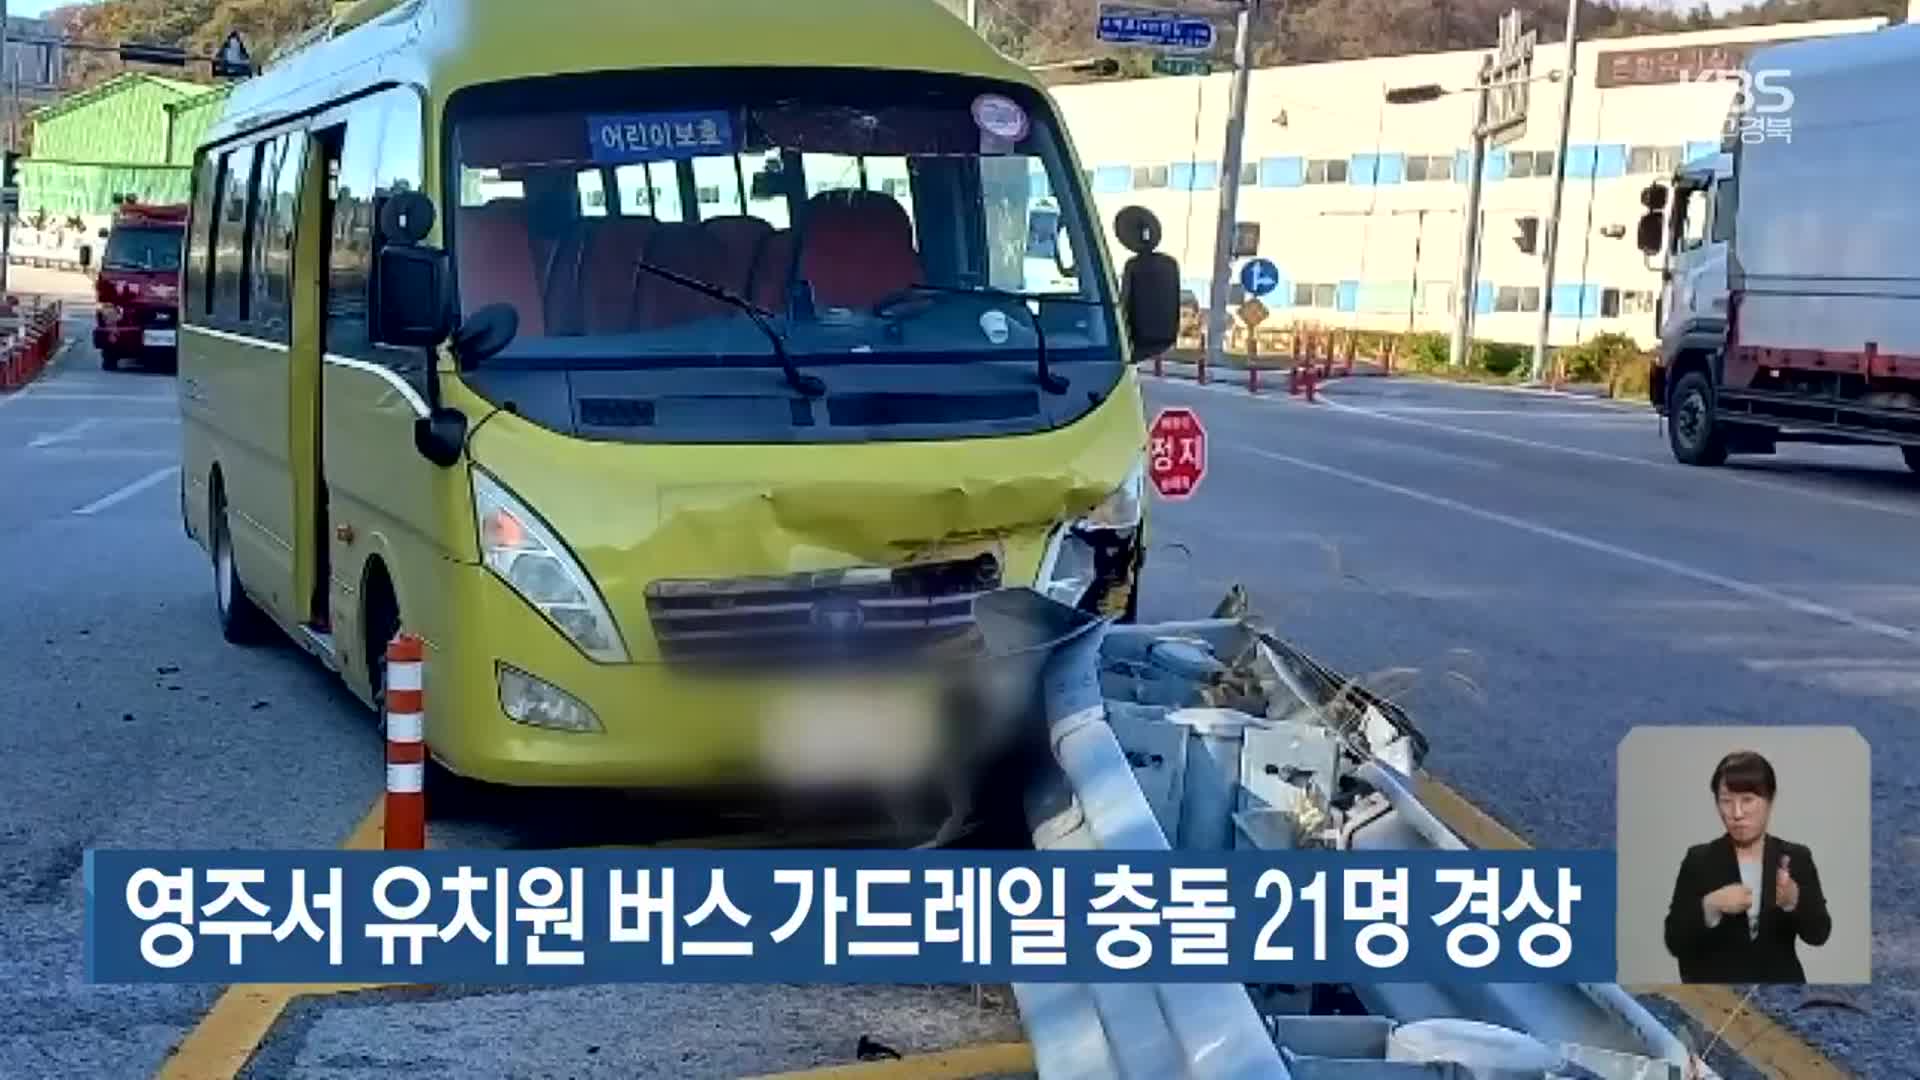 영주서 유치원 버스 가드레일 충돌 21명 경상